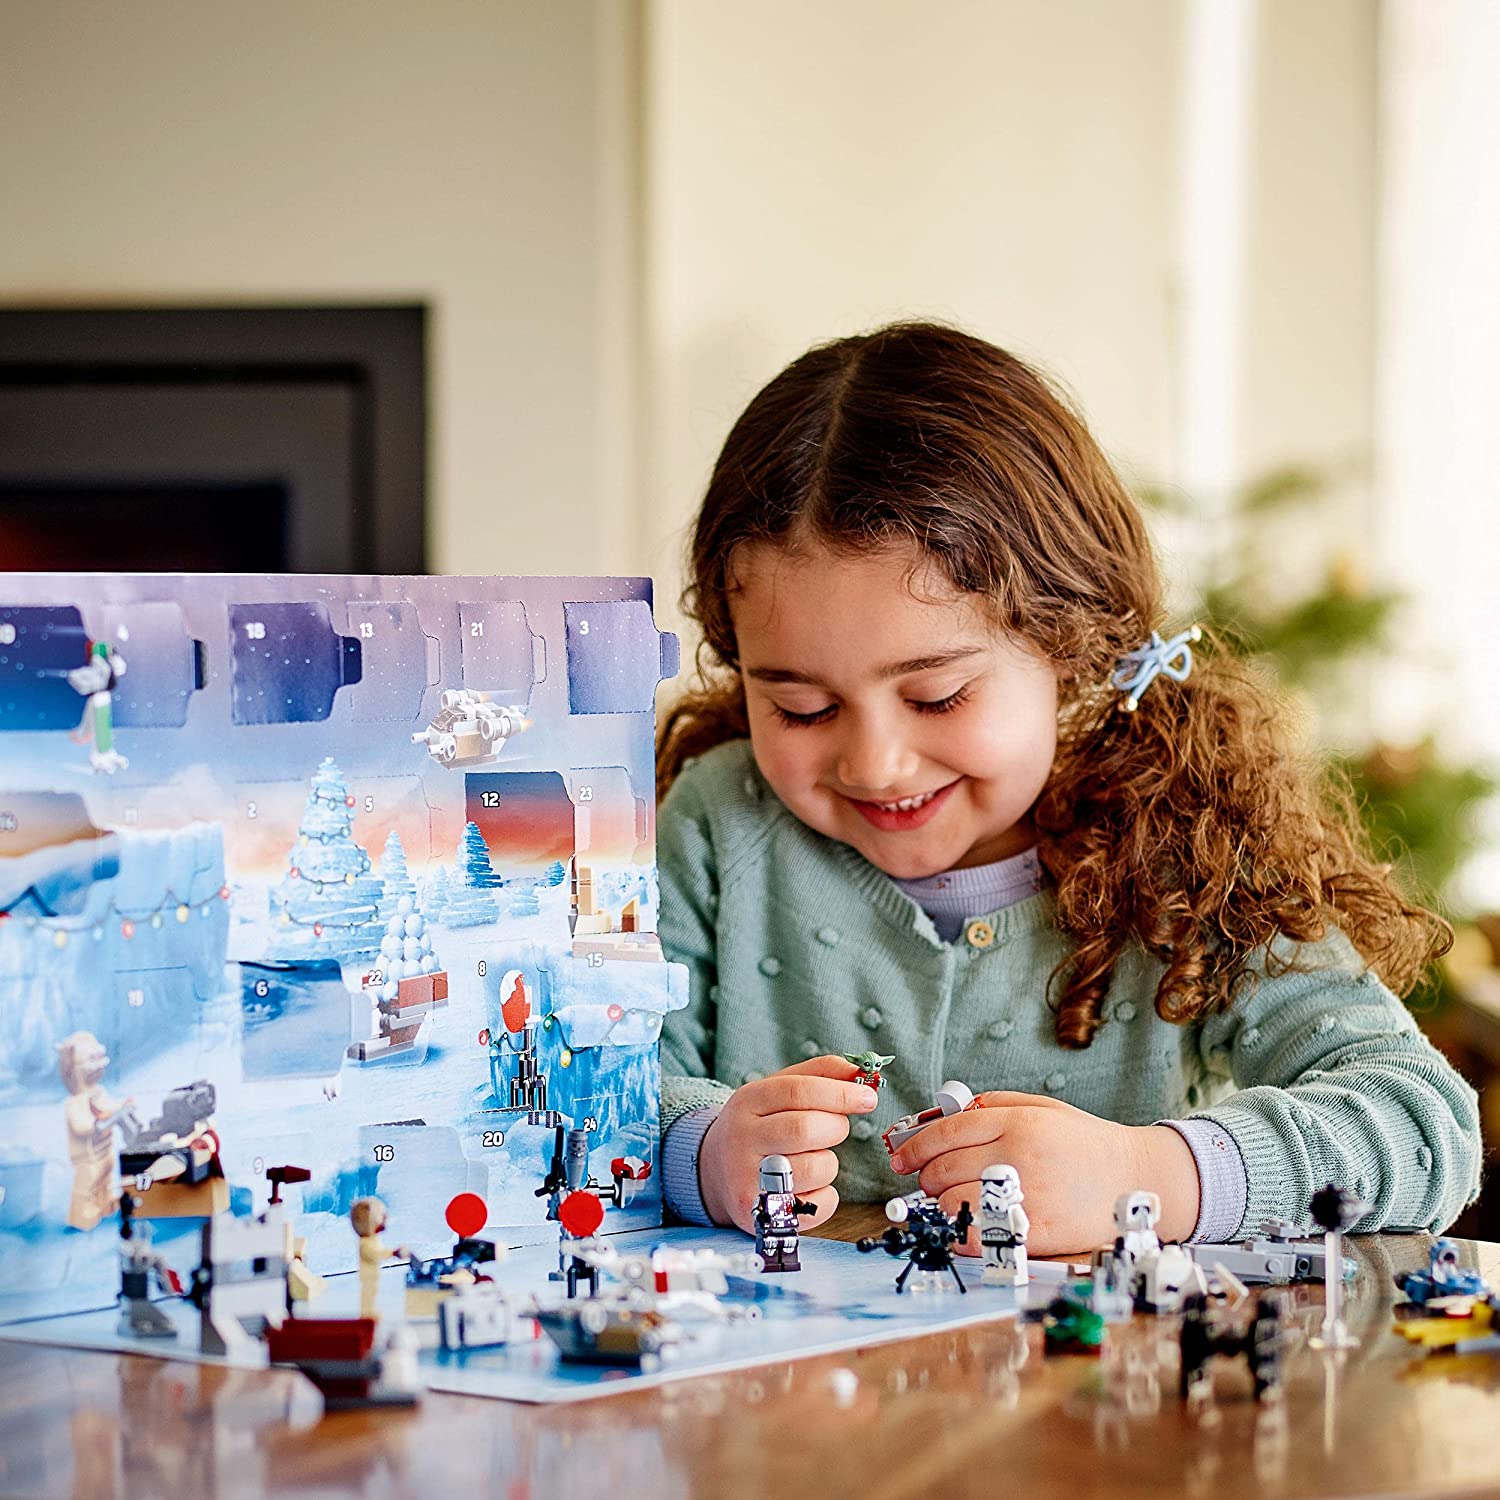 让星际迷在圣诞节到来前的每一天都幸福无比！Lego2021星球大战圣诞日历上线